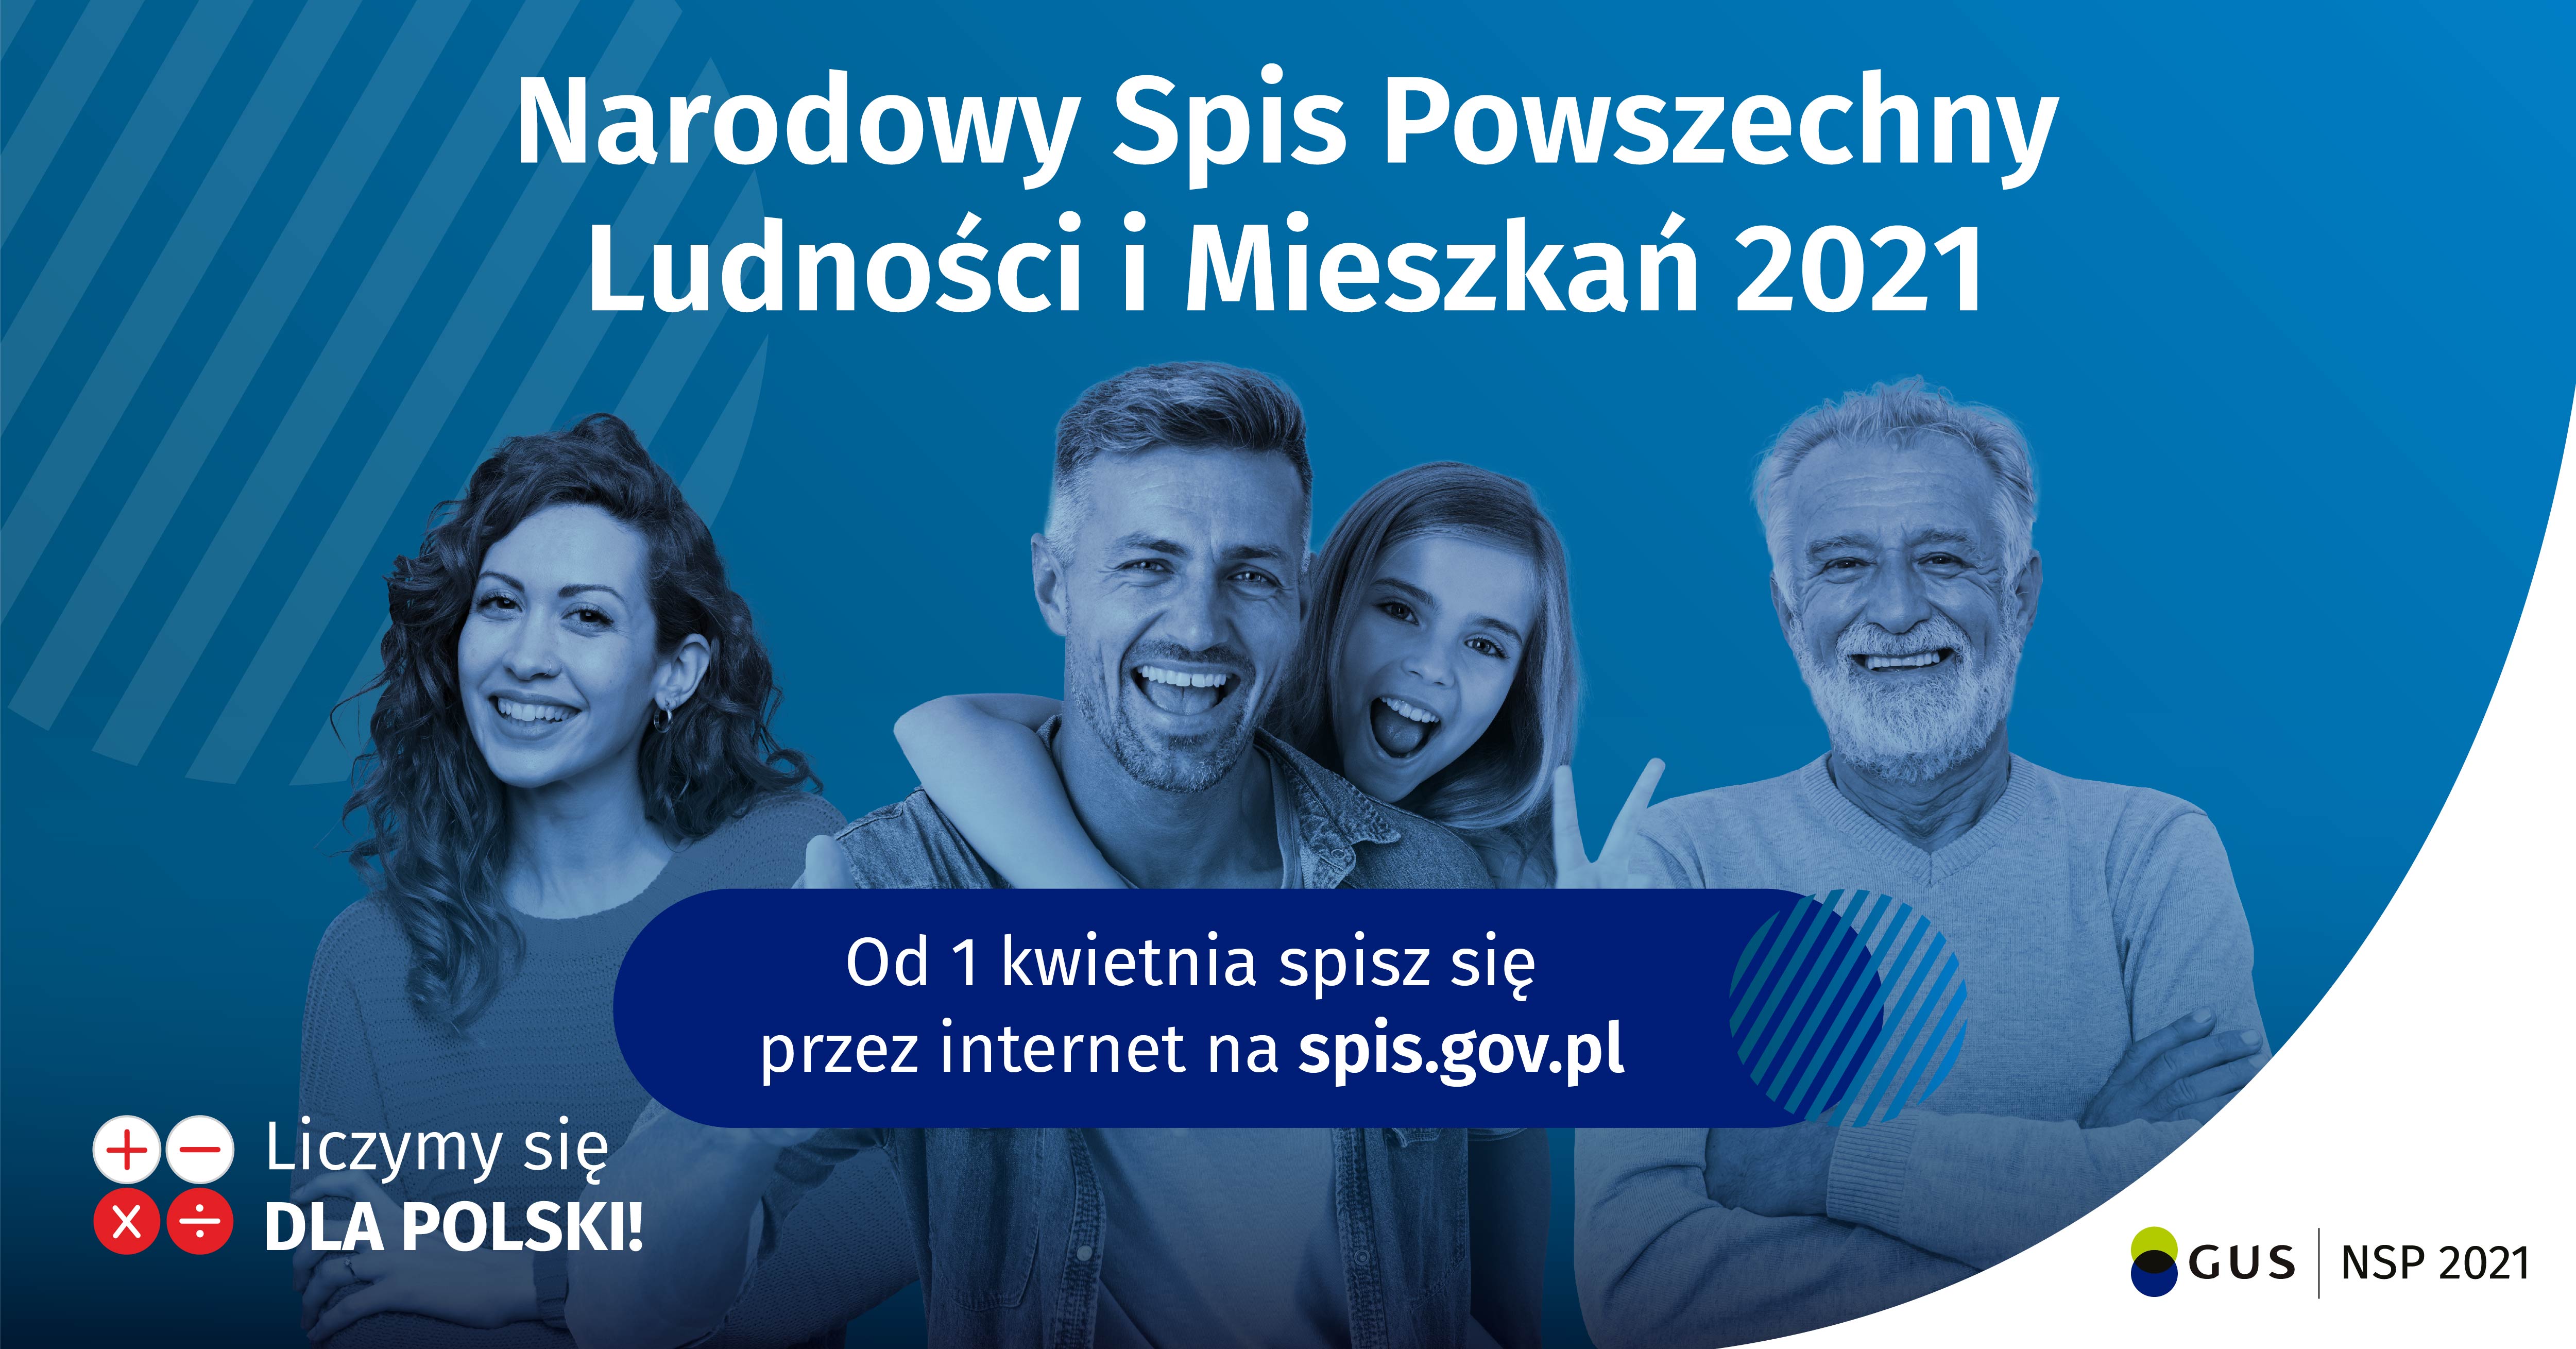 Grafika Narodowego Spisu Powszechnego Ludności i Mieszkań 2021 - od 1 kwietnia spisz się przez internet na spis.gov.pl